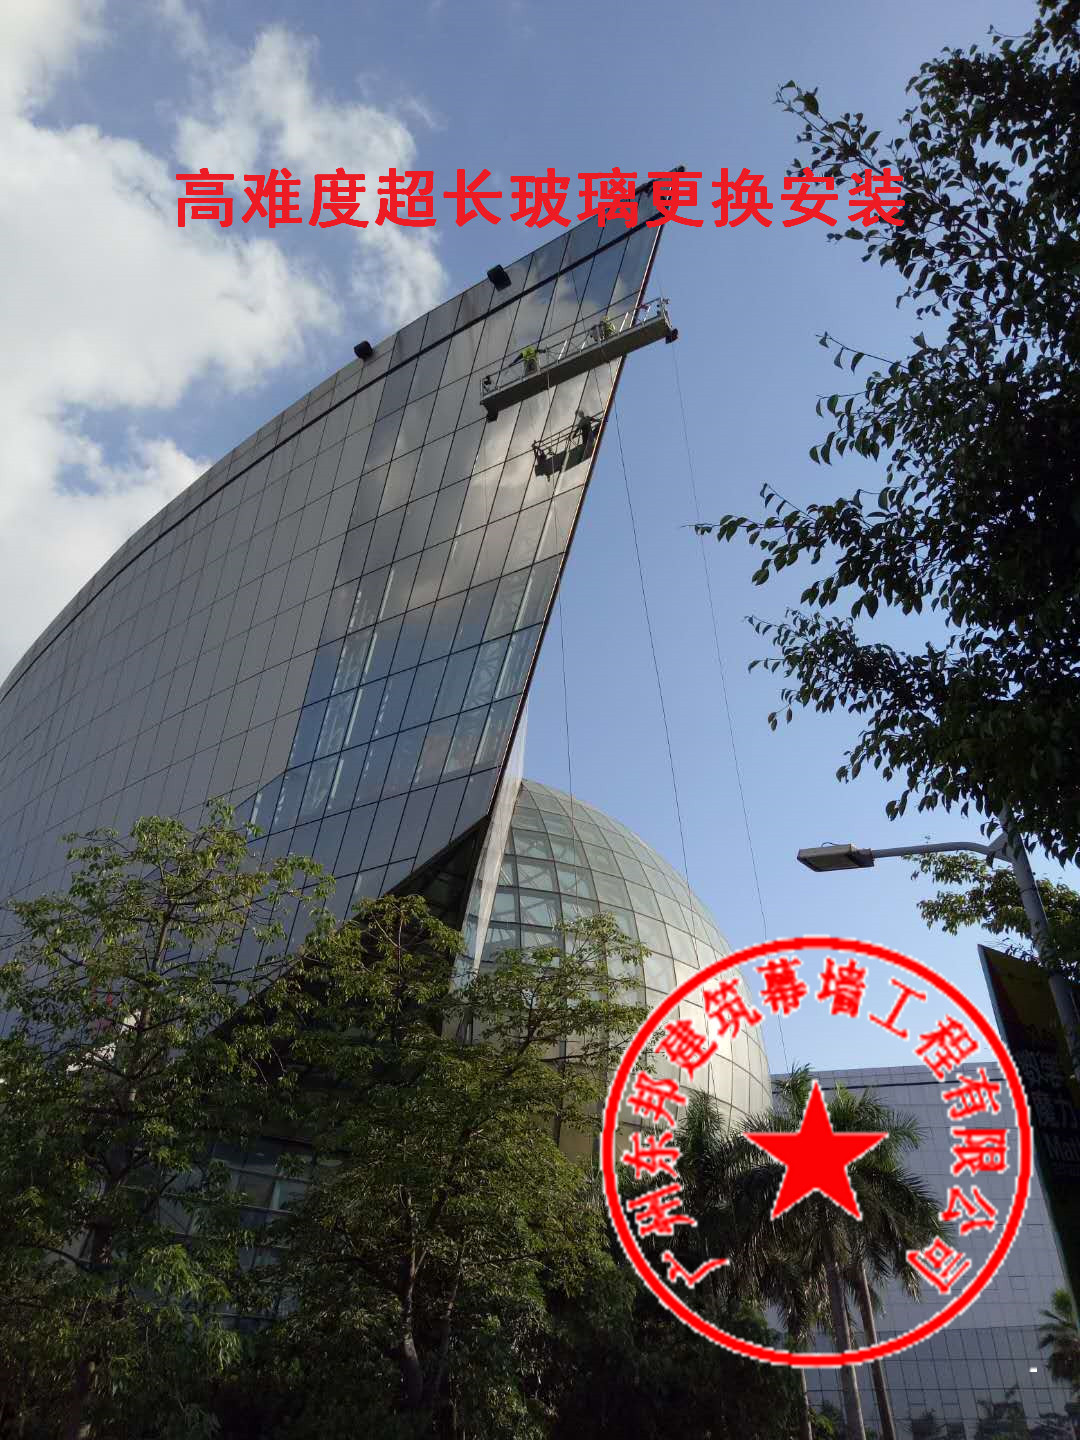 广州专业高空安装、高空拆除幕墙玻璃及广告牌安装更换